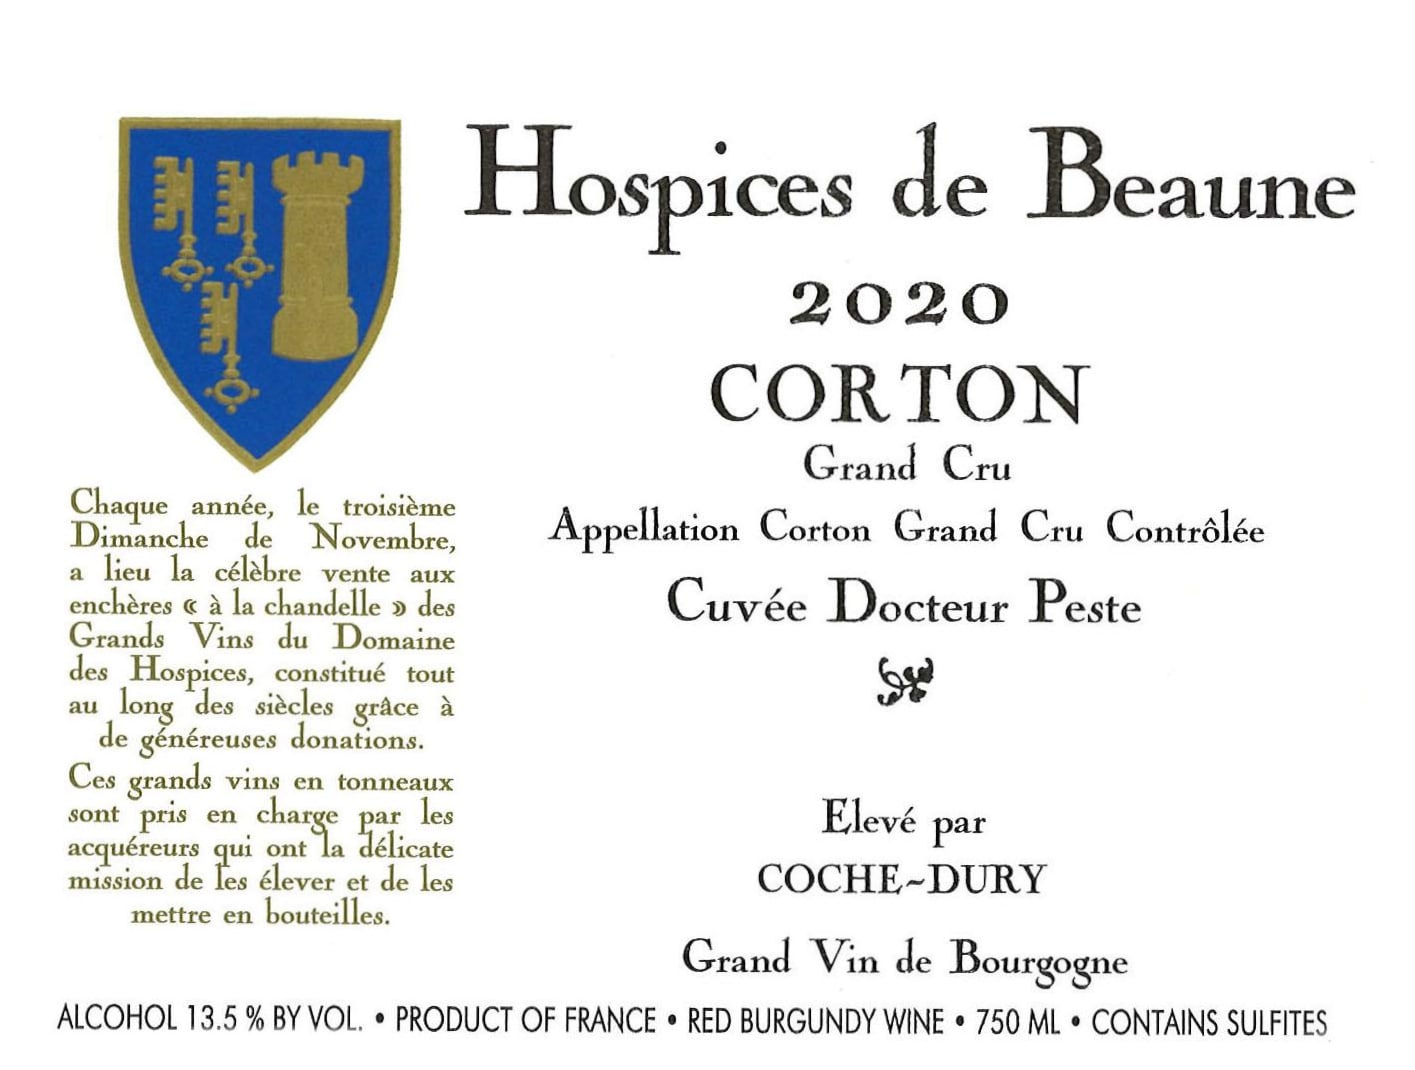 Coche-Dury - Corton Grand Cru Rouge - Hospices de Beaune Docteur Peste 2020 (750)